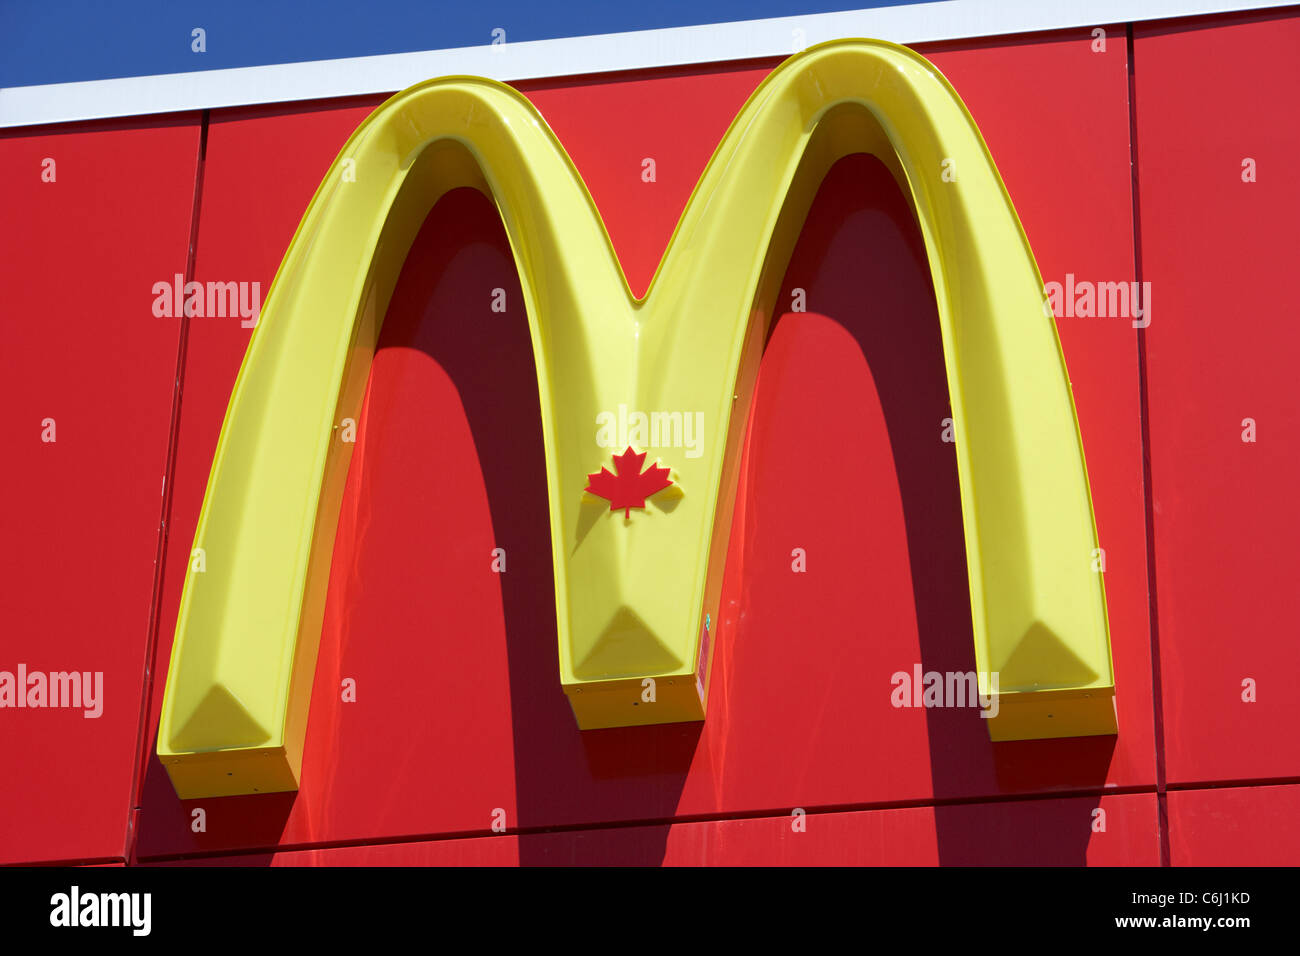 D'un restaurant Mcdonald's Golden Arches logo avec le symbole de la feuille d'érable canadienne Winnipeg Manitoba canada Banque D'Images